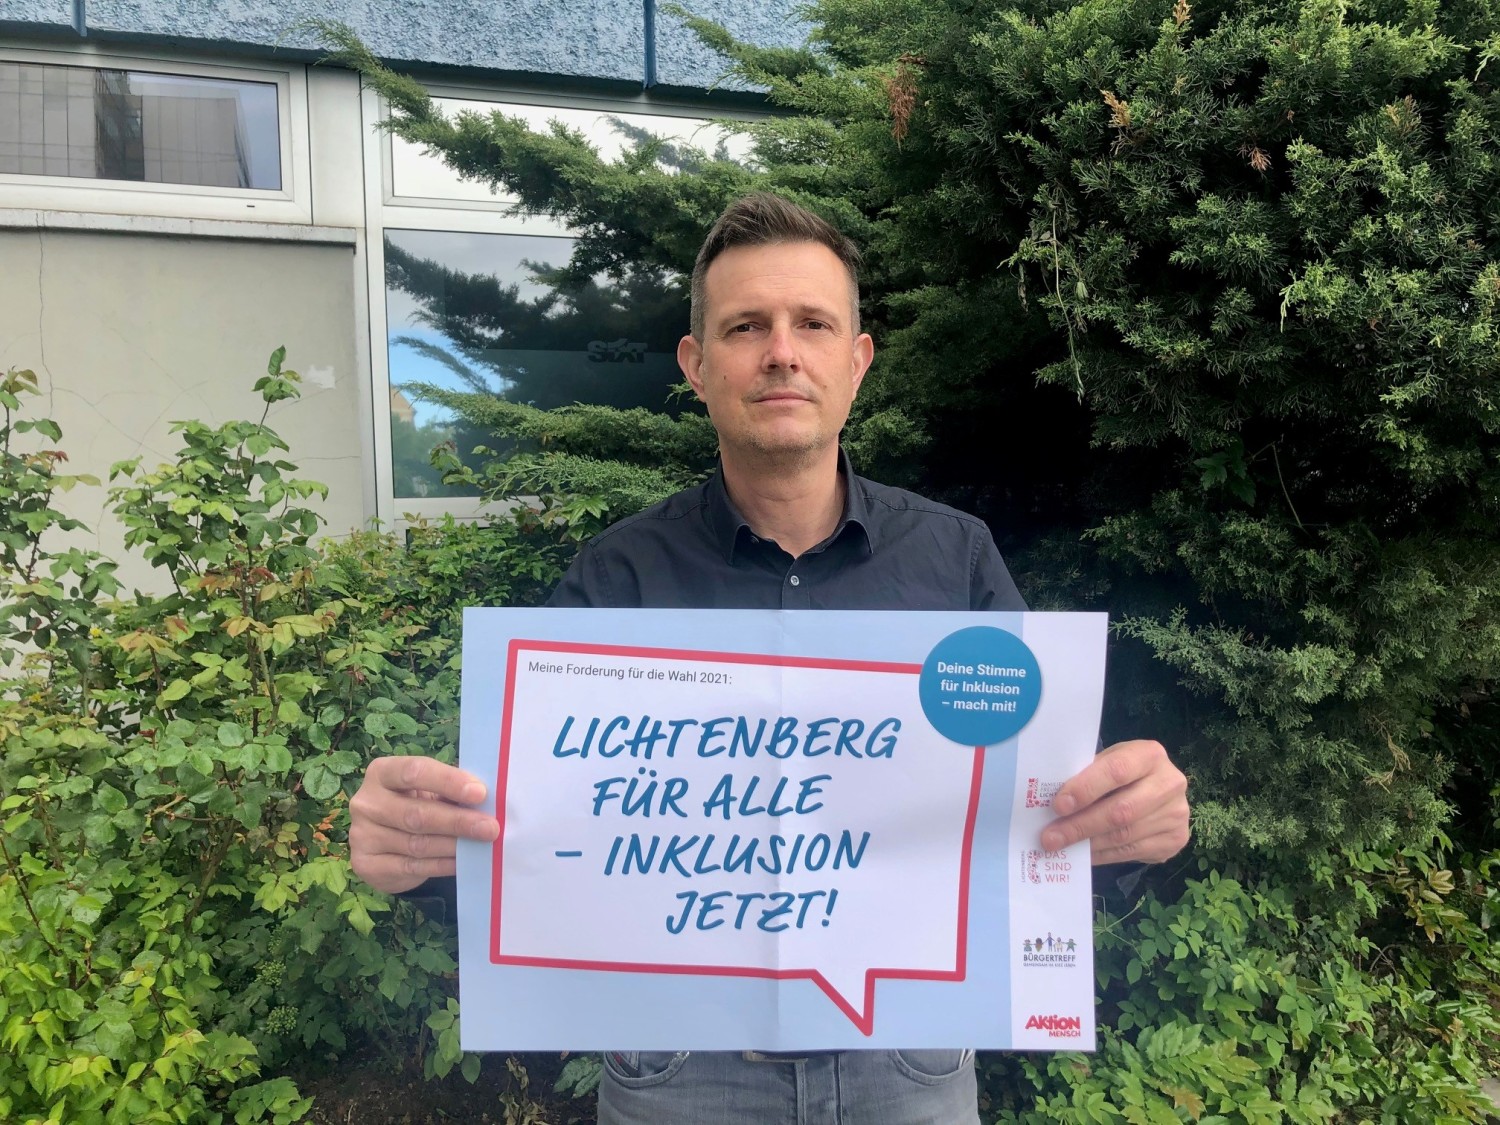 André Erfurth, Mitarbeiter von leben lernen gGmbH am EDKE, fordert: "Lichtenberg für alle - Inklusion jetzt!"